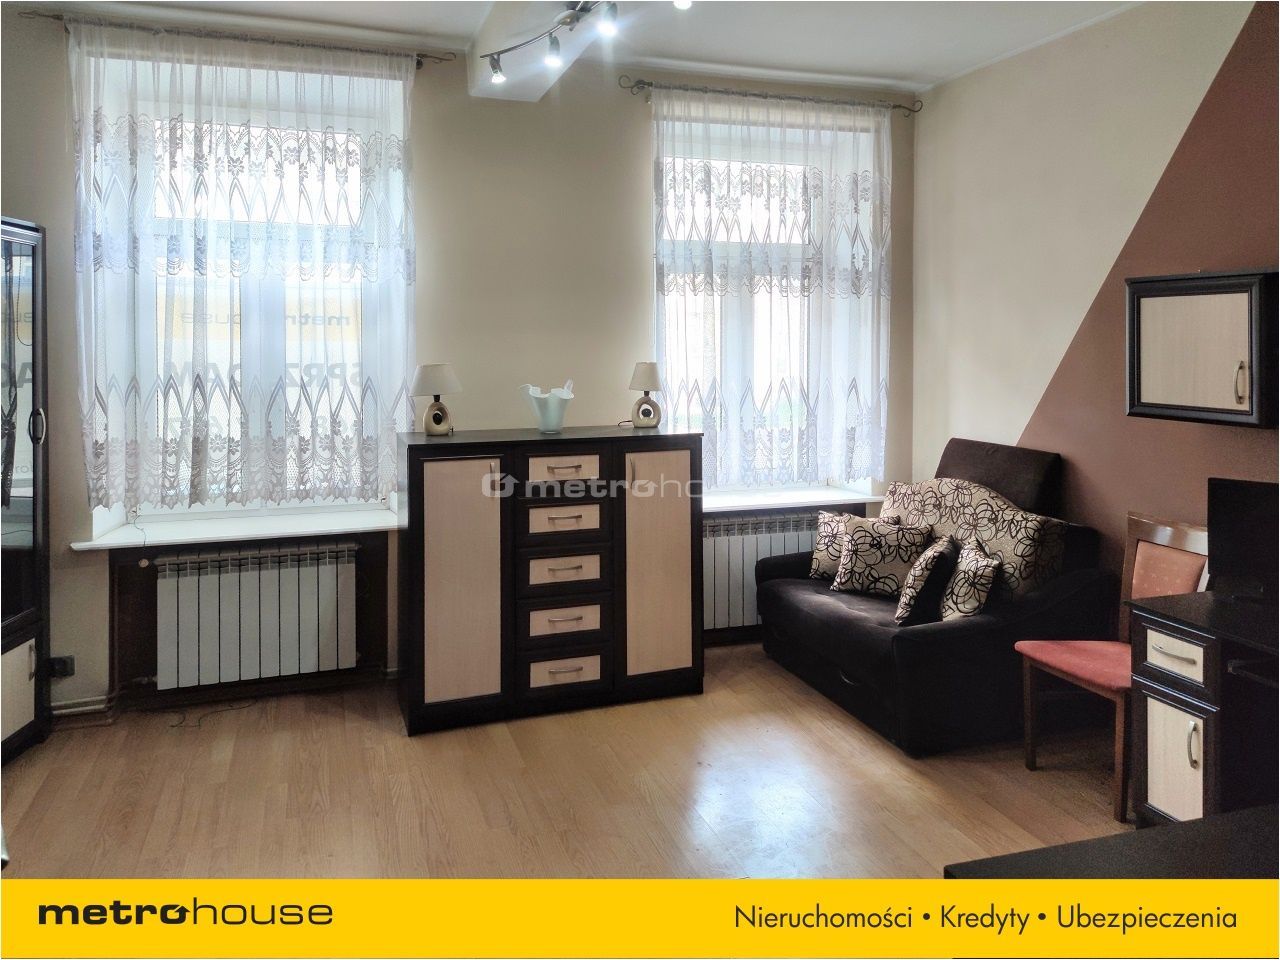 Mieszkanie na sprzedaż, Gdańsk, Nowy Port, 2 pokoje, 37 mkw, za 389000 zł: zdjęcie 93837339